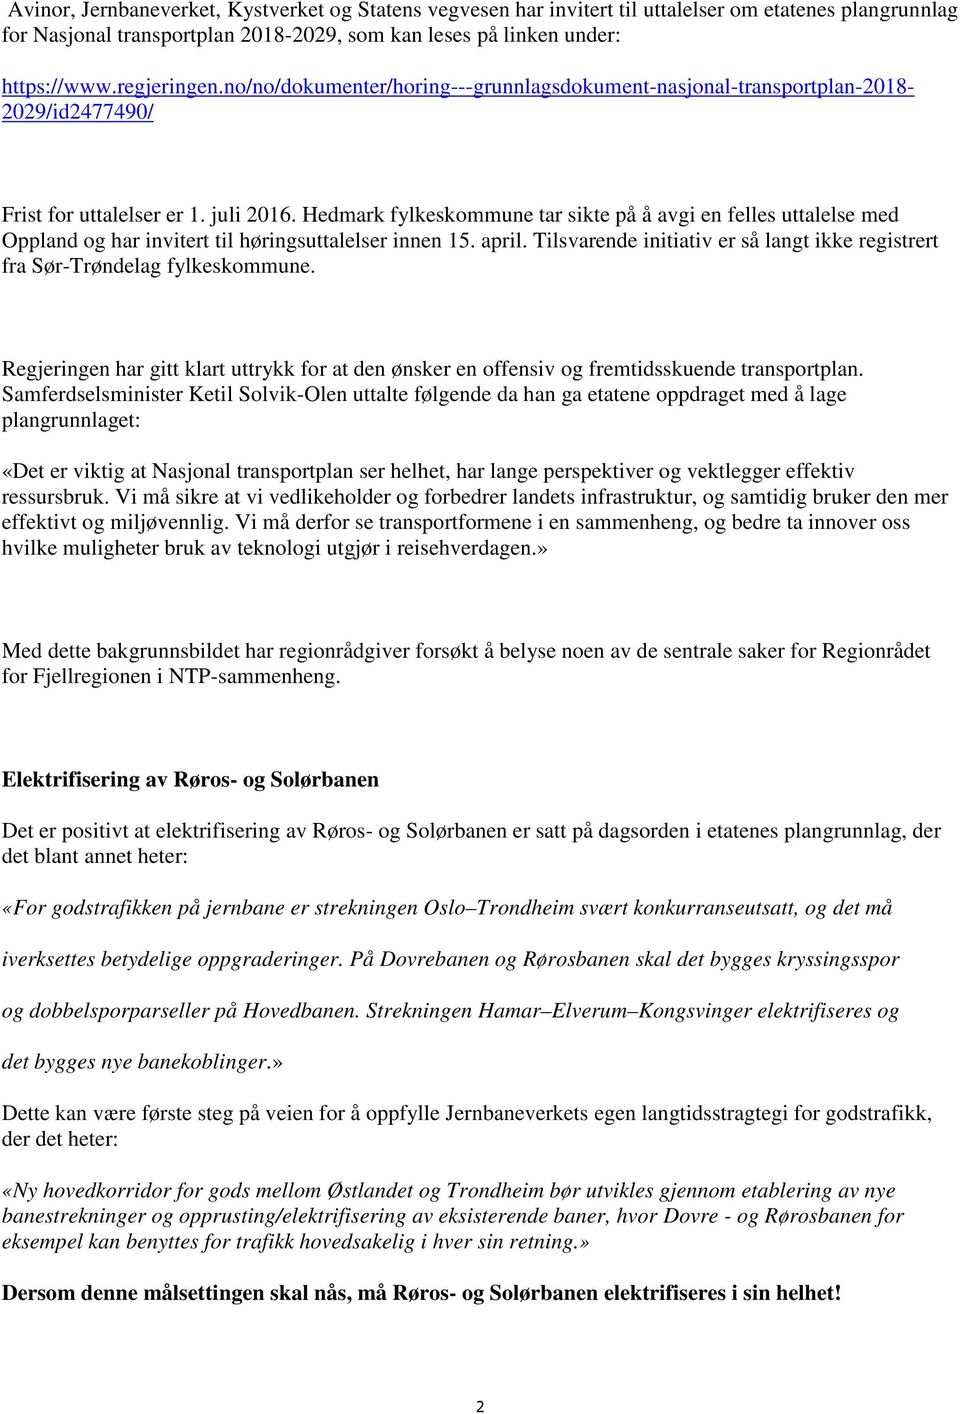 Hedmark fylkeskommune tar sikte på å avgi en felles uttalelse med Oppland og har invitert til høringsuttalelser innen 15. april.